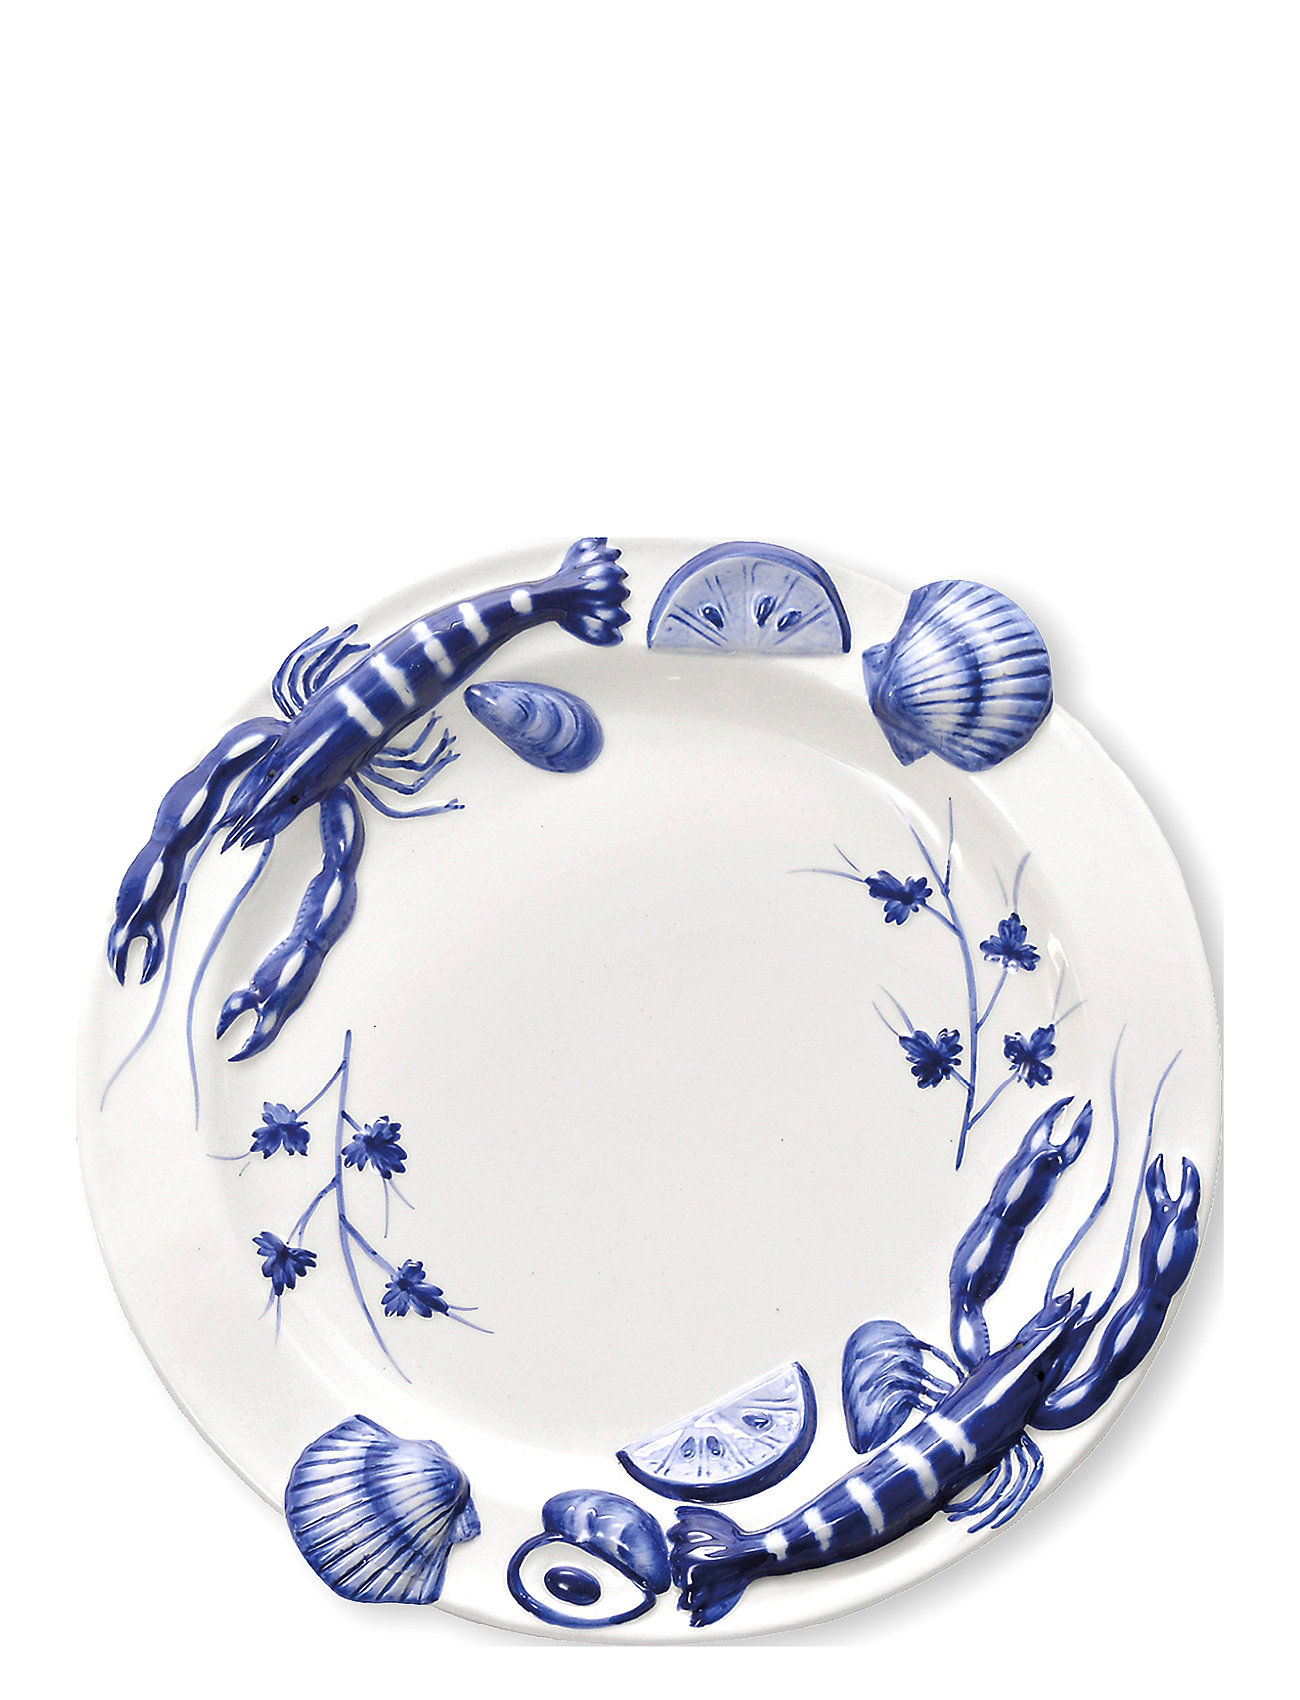 Seafood Cirkel Home Tableware Plates Dinner Plates Blue Familianna